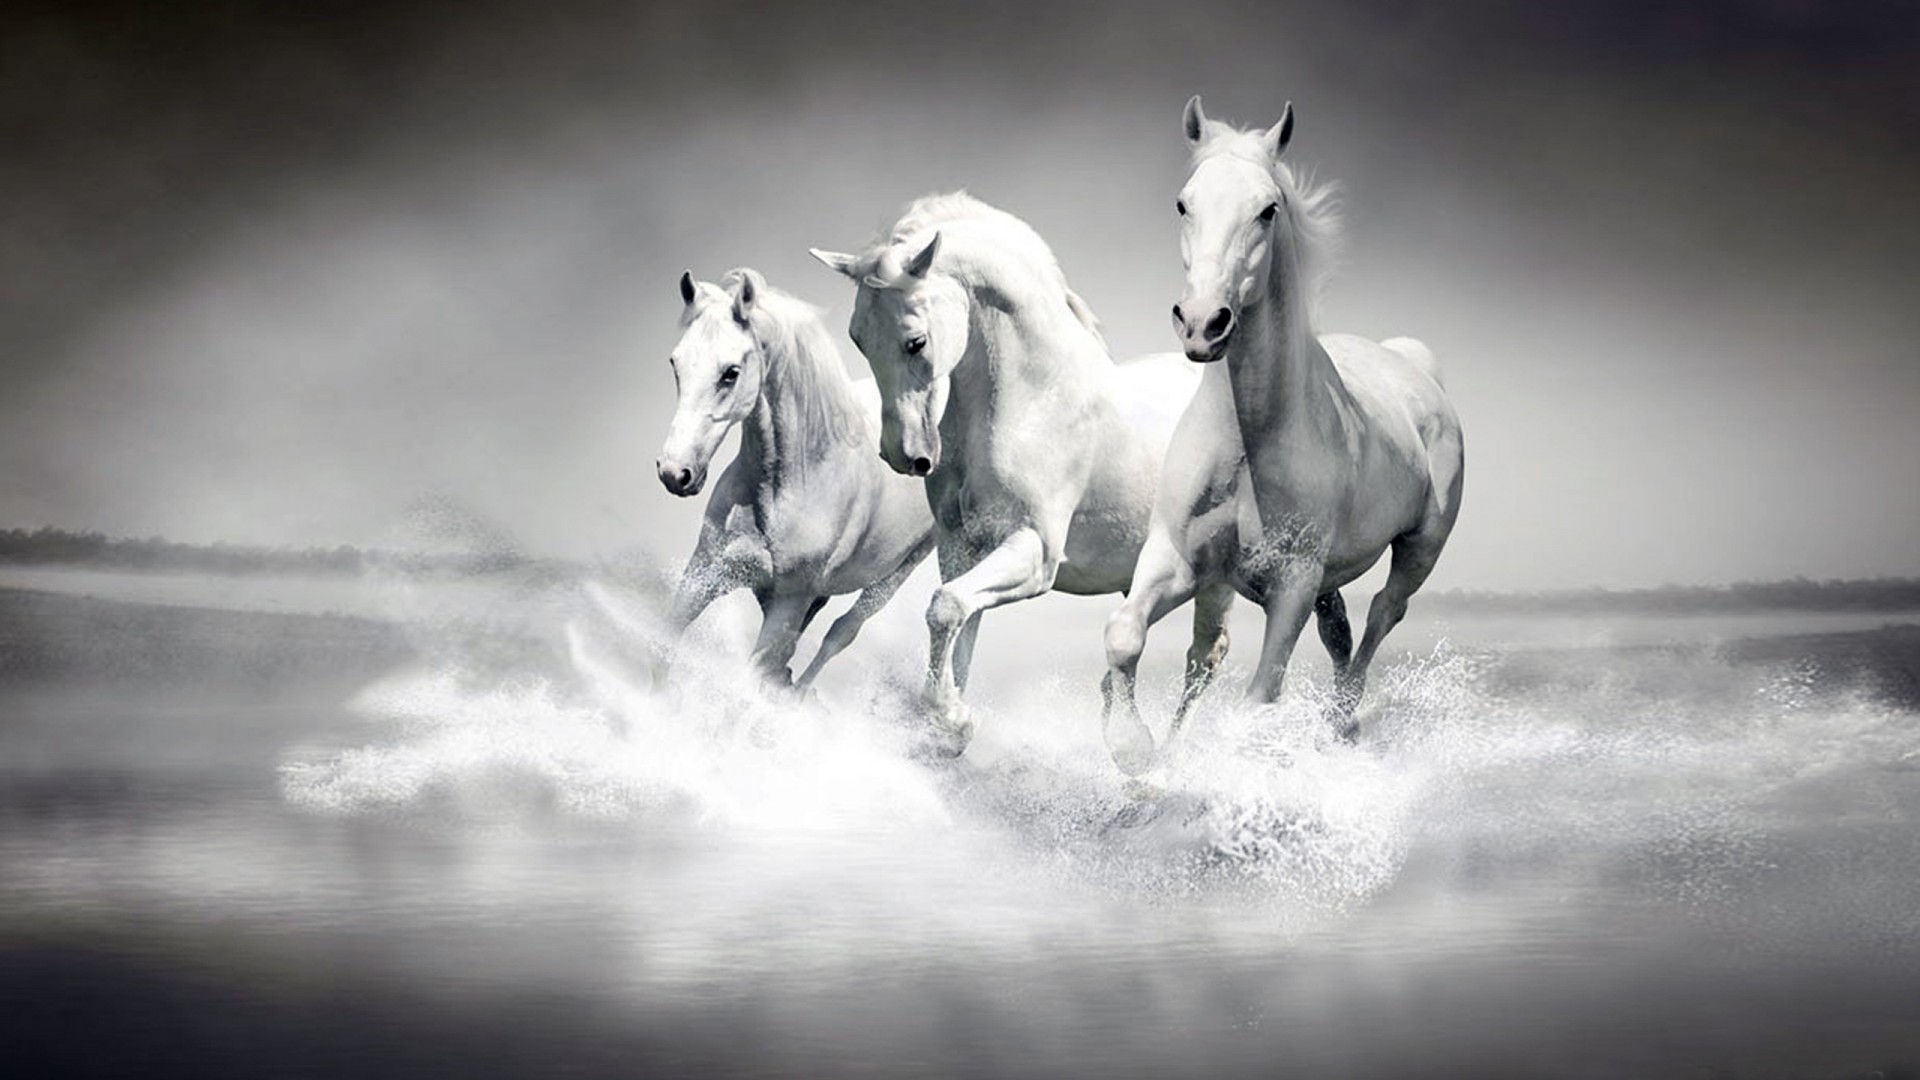 sfondi bianchi,cavallo,bianca,bianco e nero,criniera,fotografia in bianco e nero